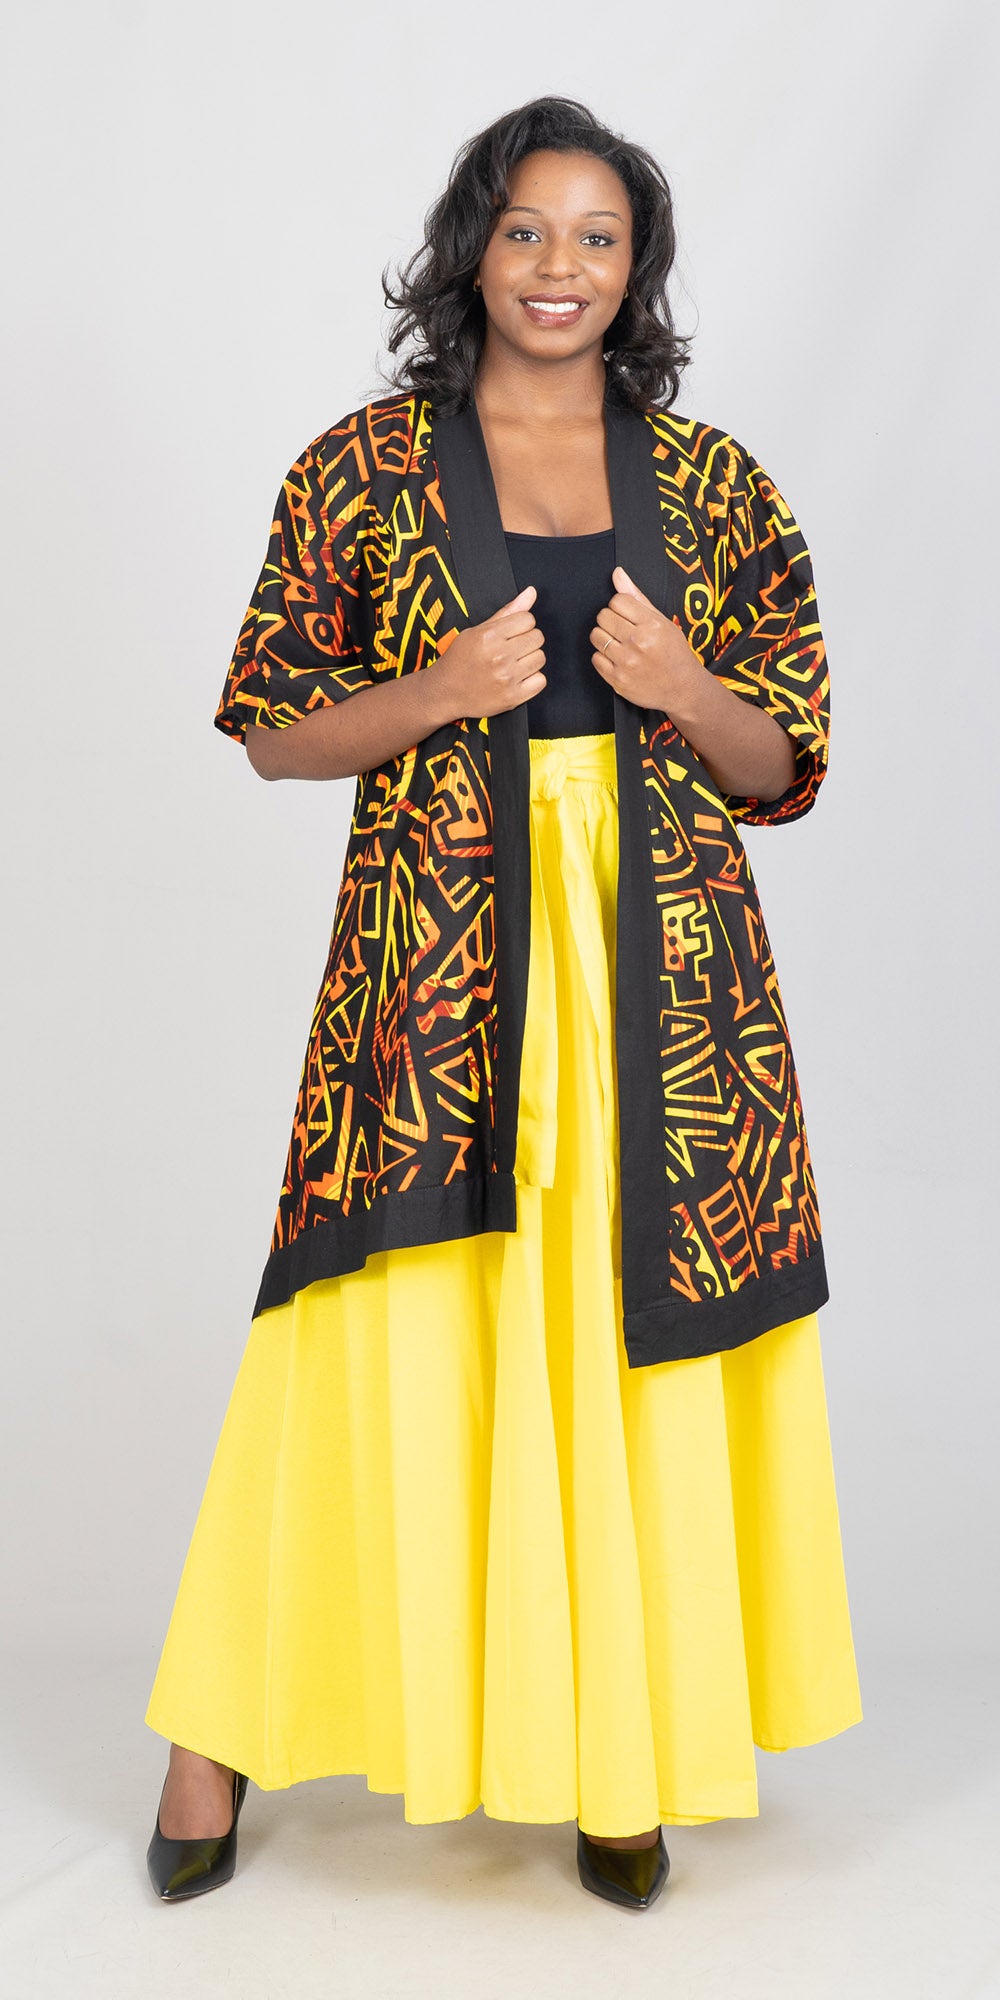 KaraChic 7001S-Yellow - Elastic Waist Skirt